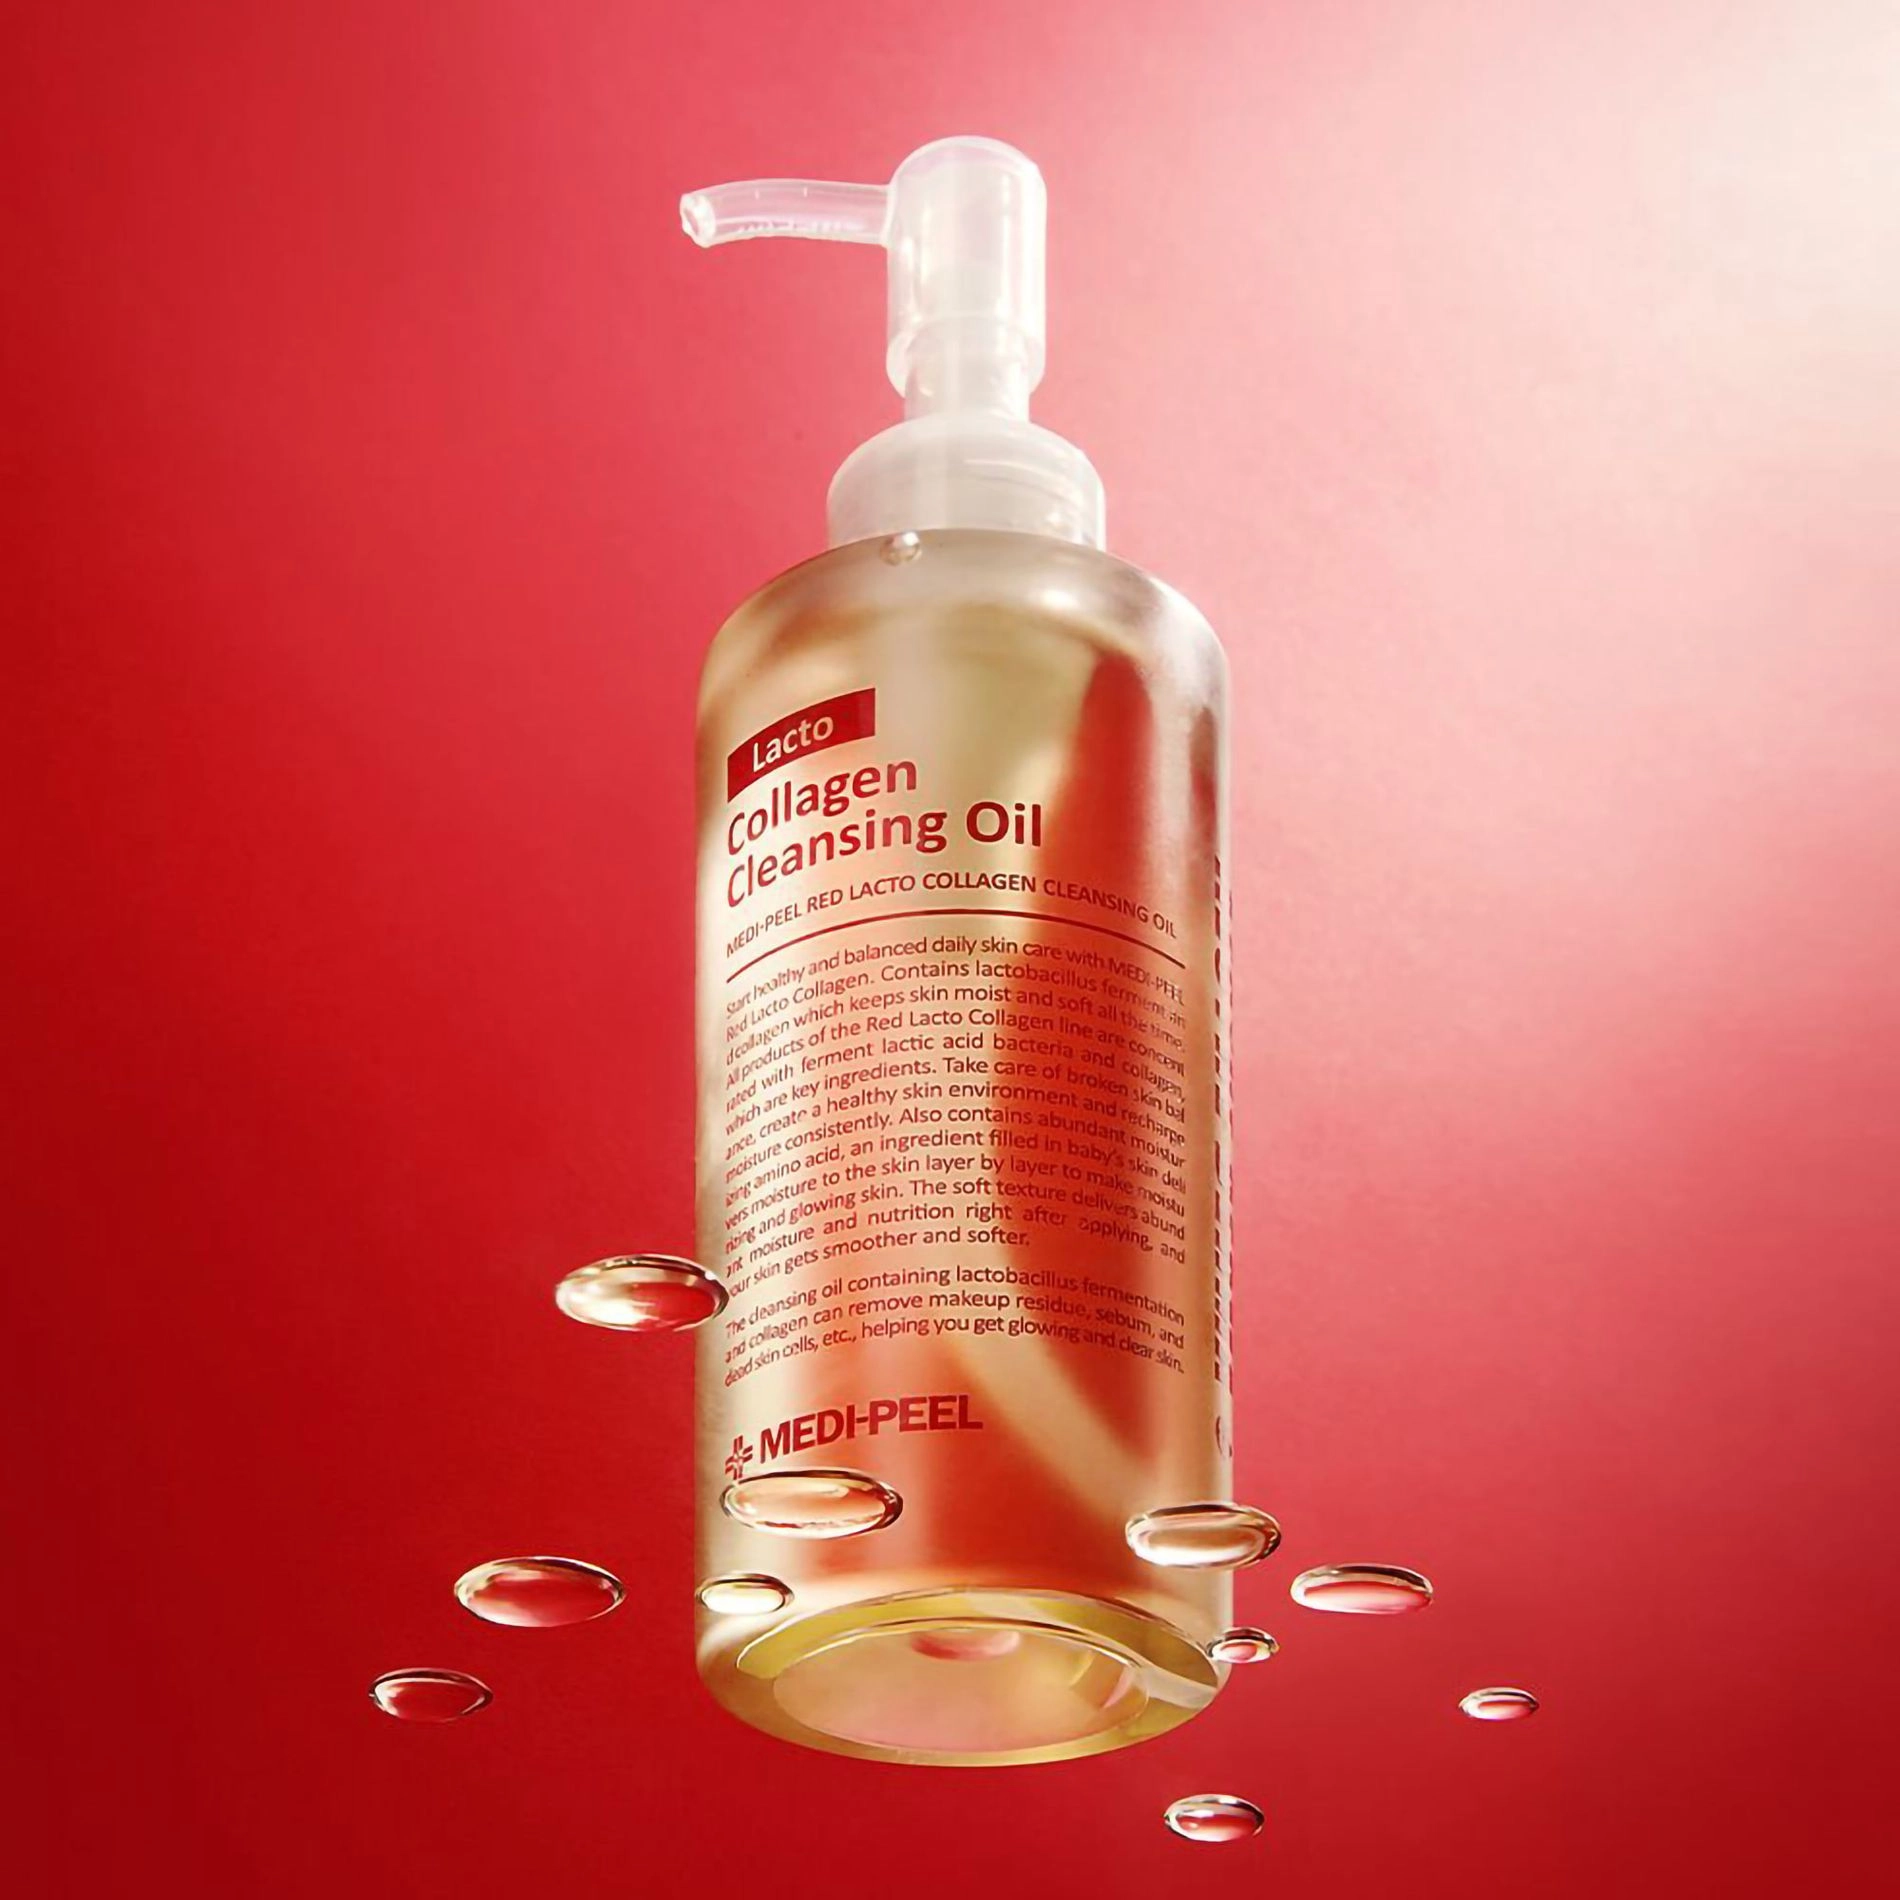 Гидрофильное масло с пробиотиками и коллагеном - Medi peel Red Lacto Collagen Cleansing Oil, 200 мл - фото N3